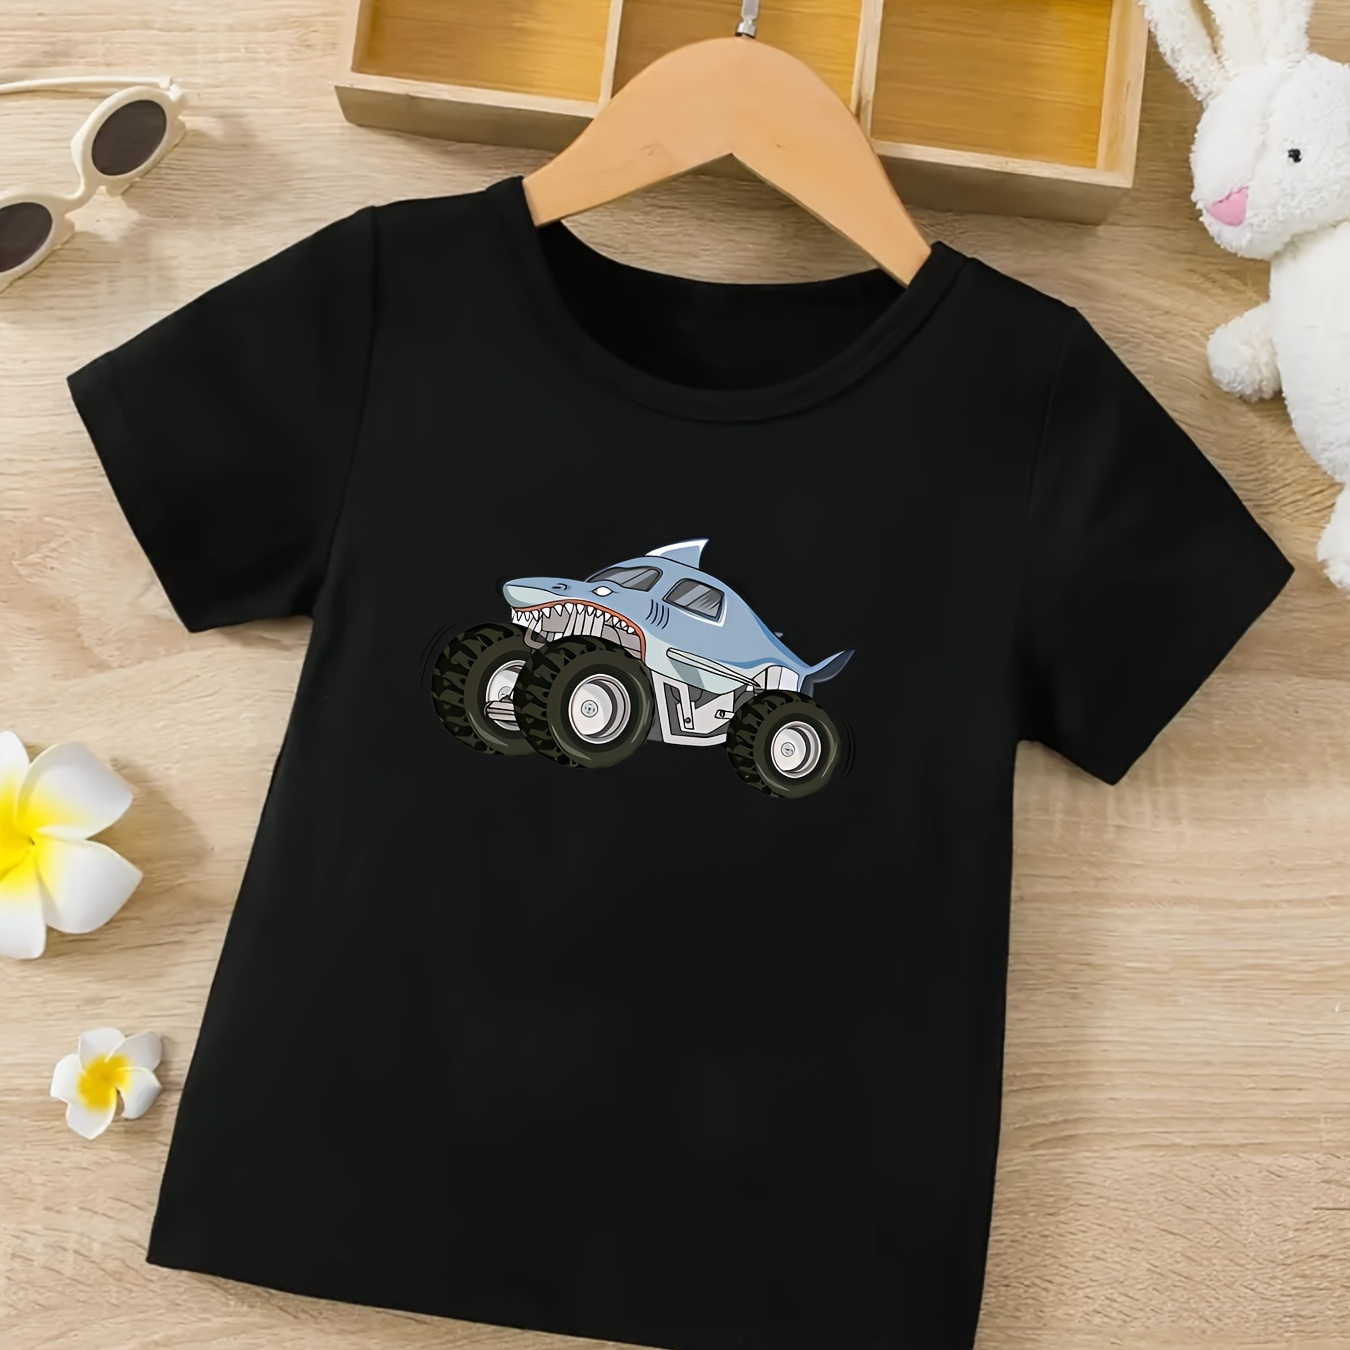 

Cartoon Shark Monster Truck Print Boy's Creative T-shirt, Casual Short Sleeve Crew Neck Top, Boy's Summer Clothing